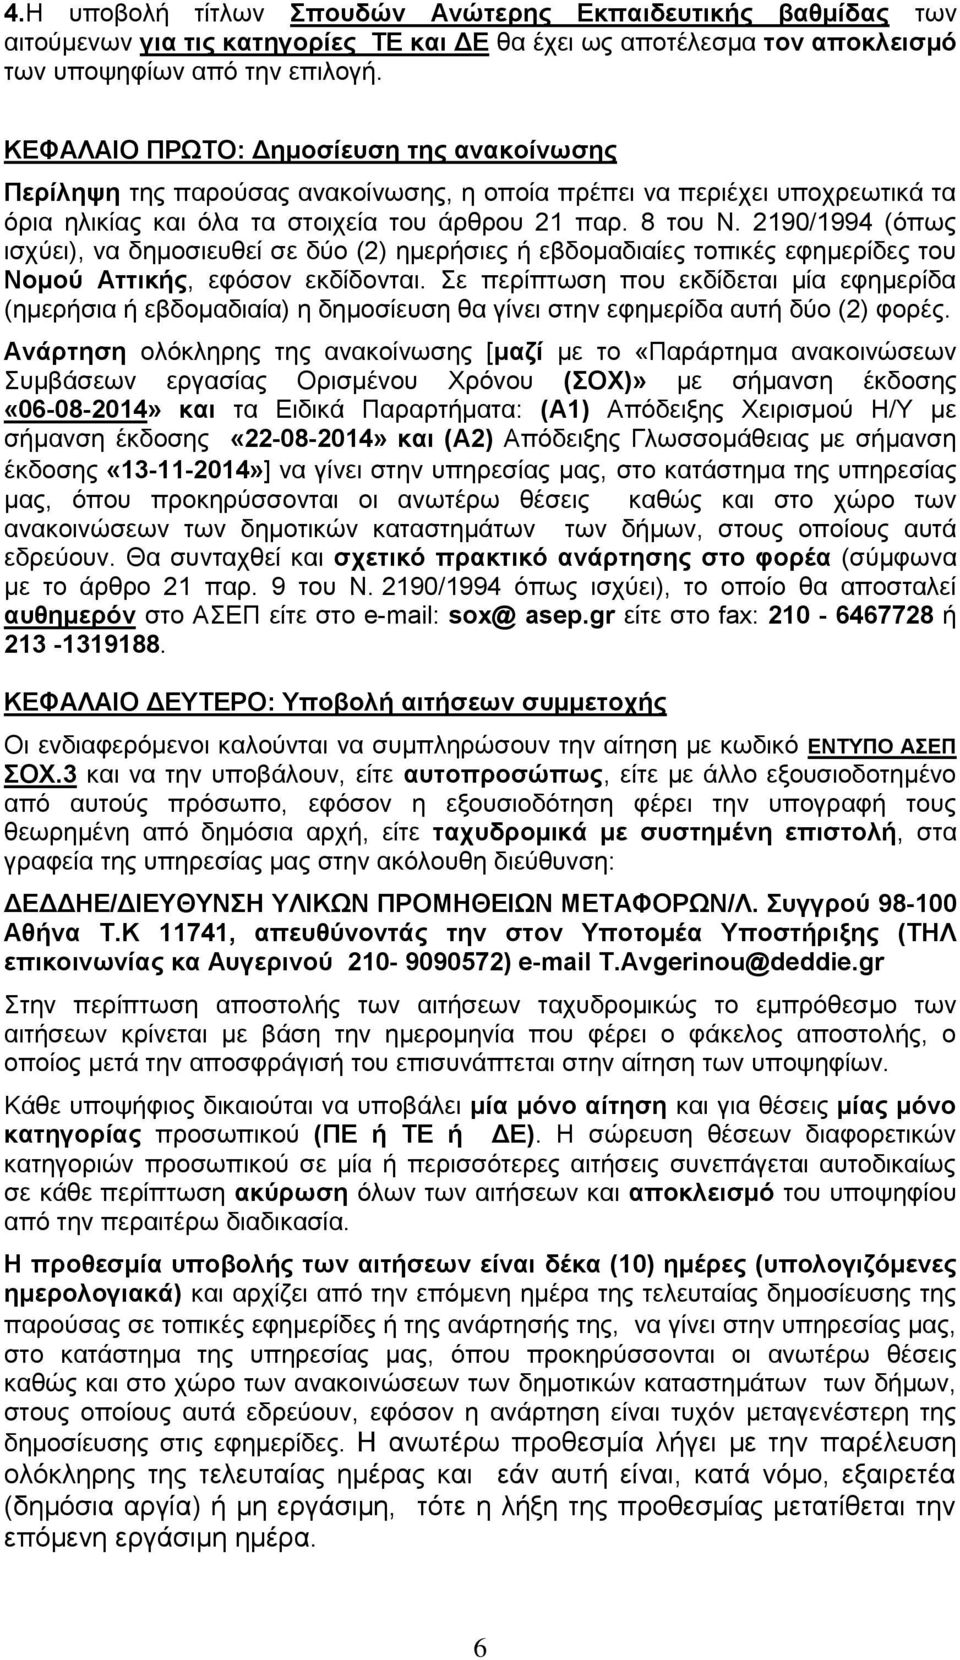 2190/1994 (όπως ισχύει), να δημοσιευθεί σε δύο (2) ημερήσιες ή εβδομαδιαίες τοπικές εφημερίδες του Nομού Αττικής, εφόσον εκδίδονται.